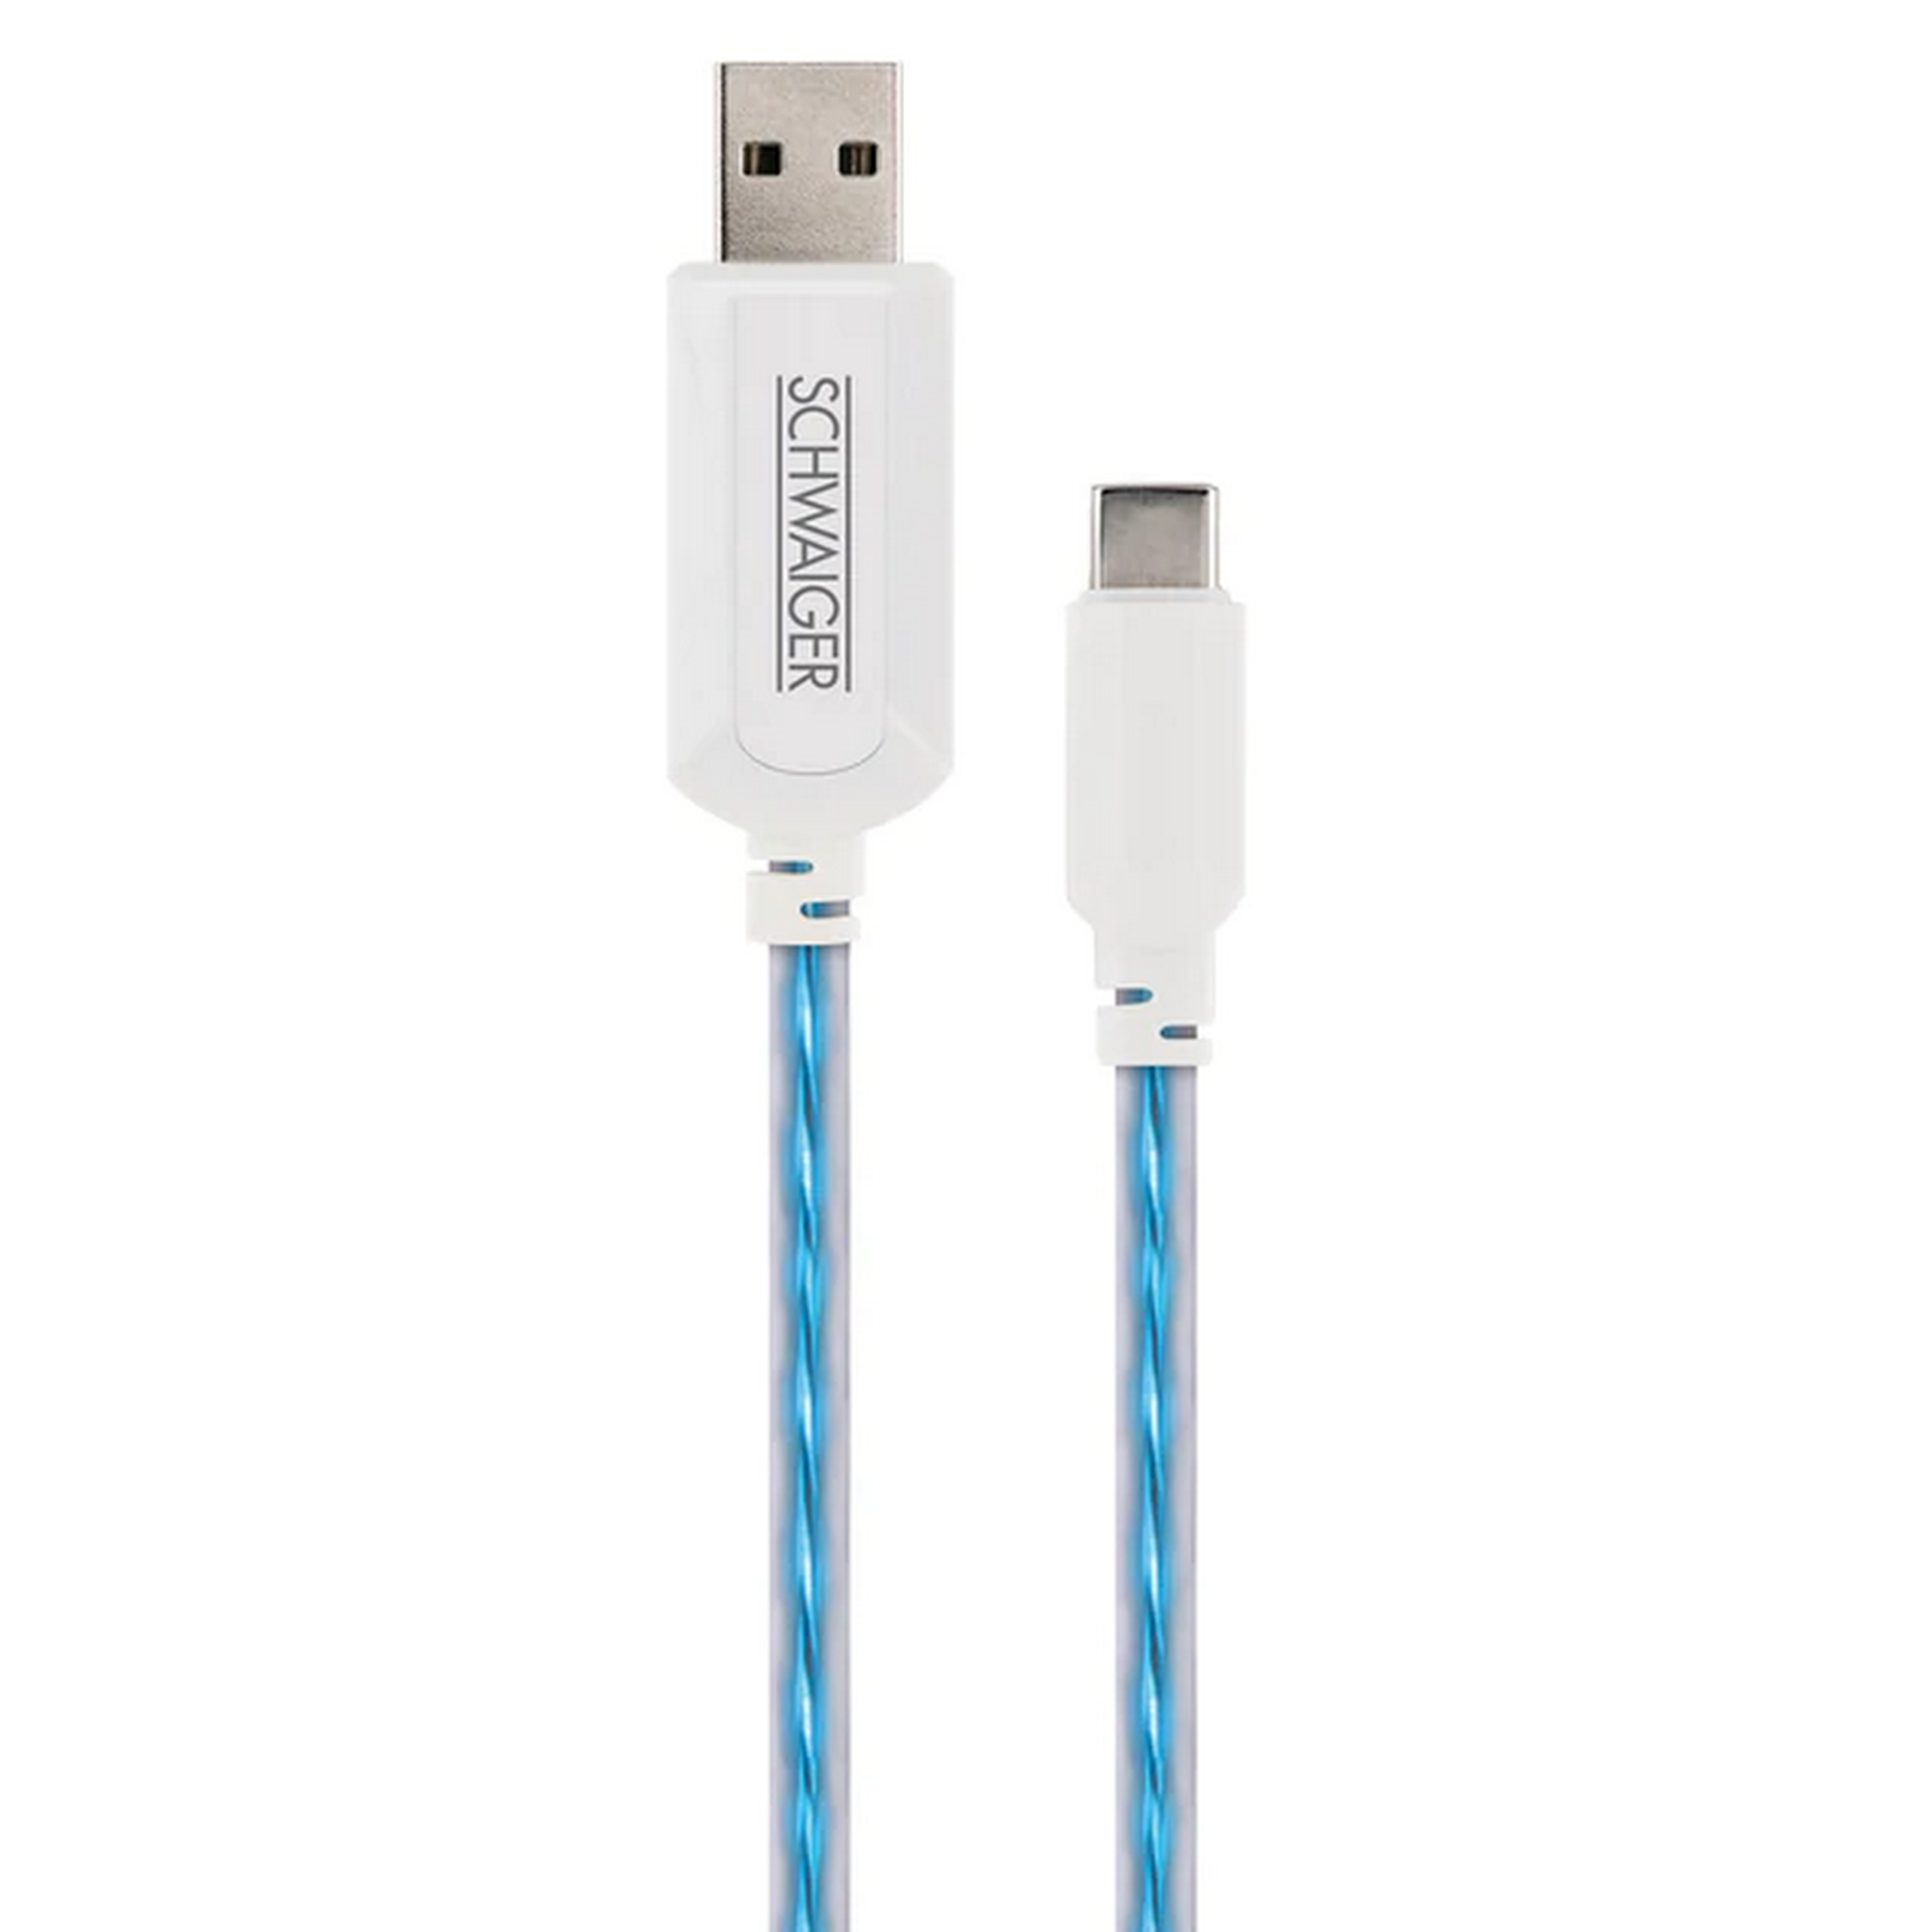 Sync- und Ladekabel USB 3.1 C/USB 2.0 A 80 cm, blau leuchtend + product picture